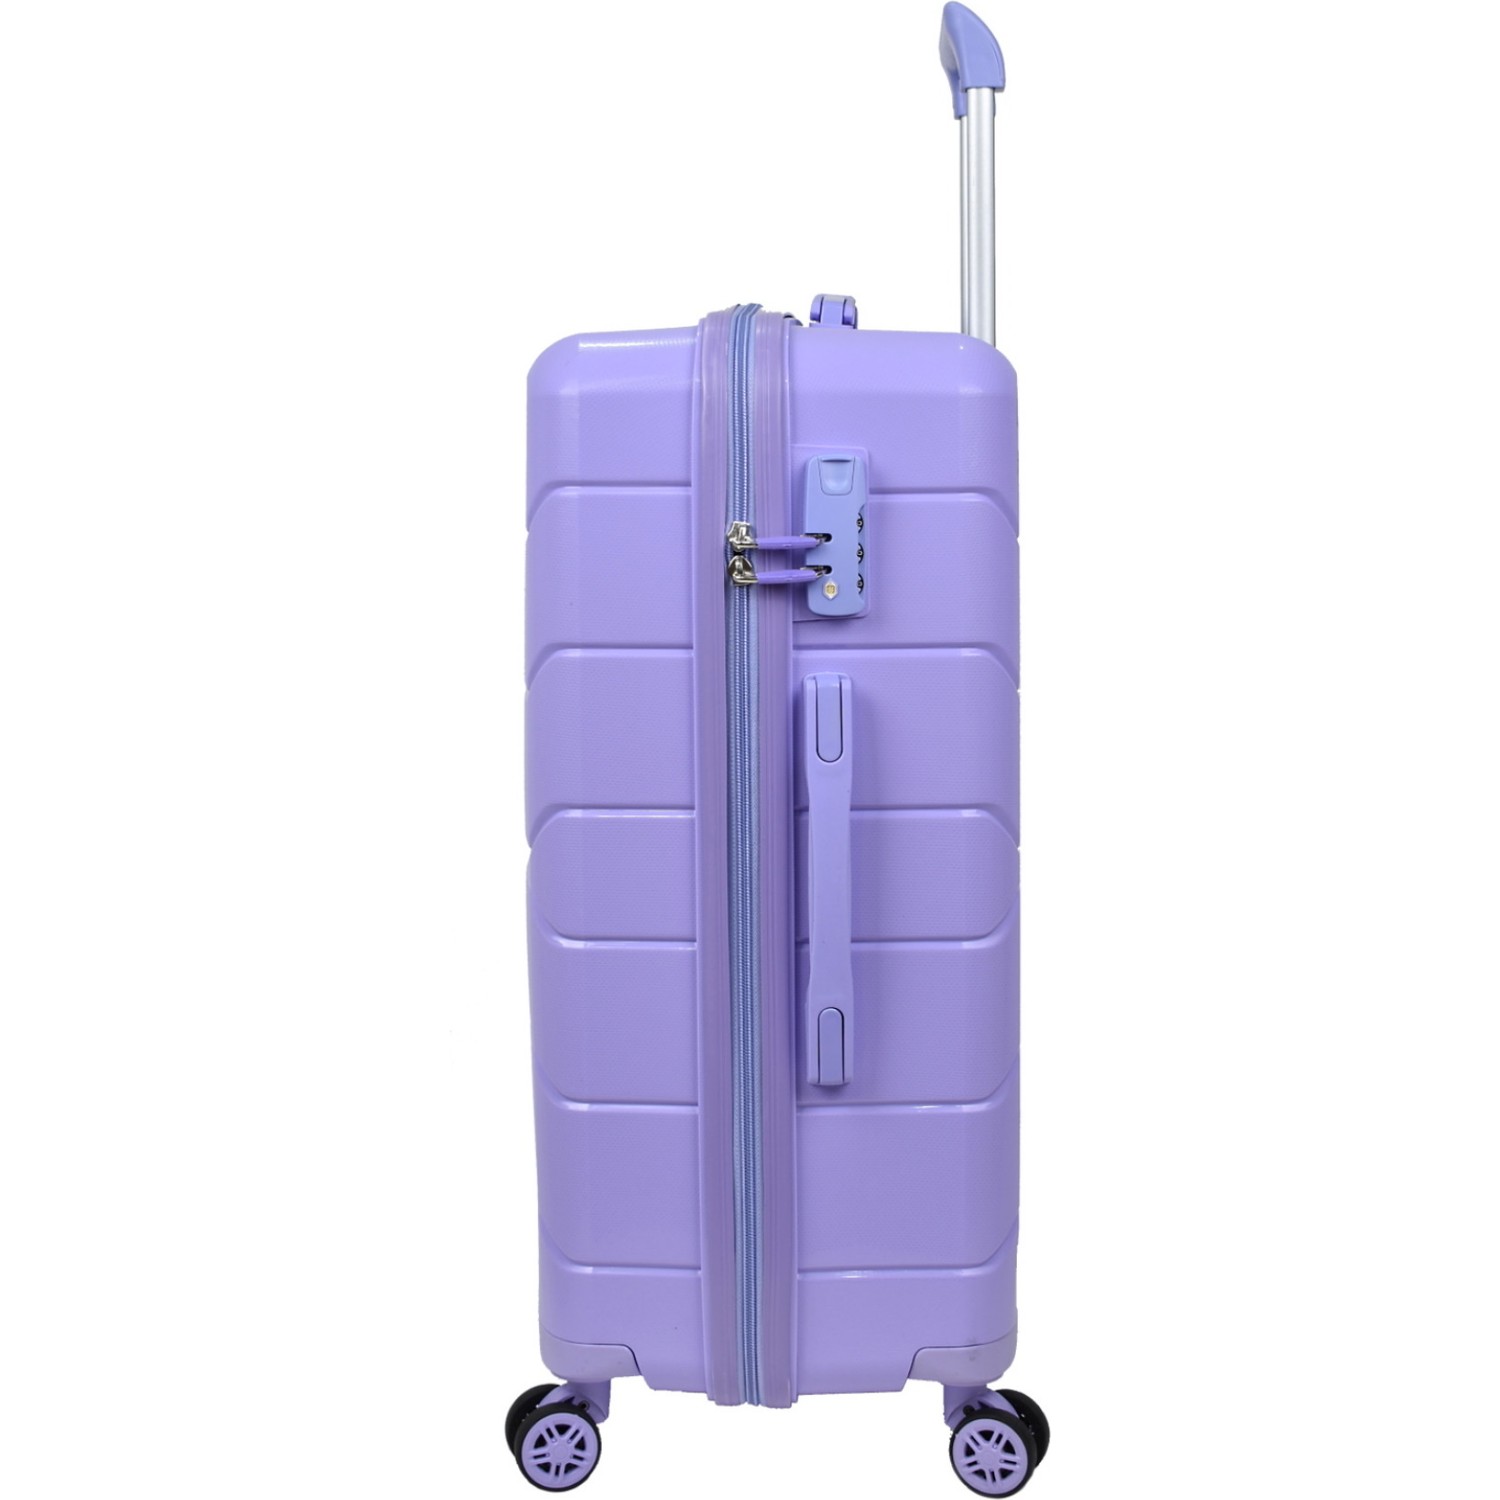 Маленький чемодан для ручьной клади из полипропилена MCS V366 S PURPLE! Для 8-10 кг! - 3